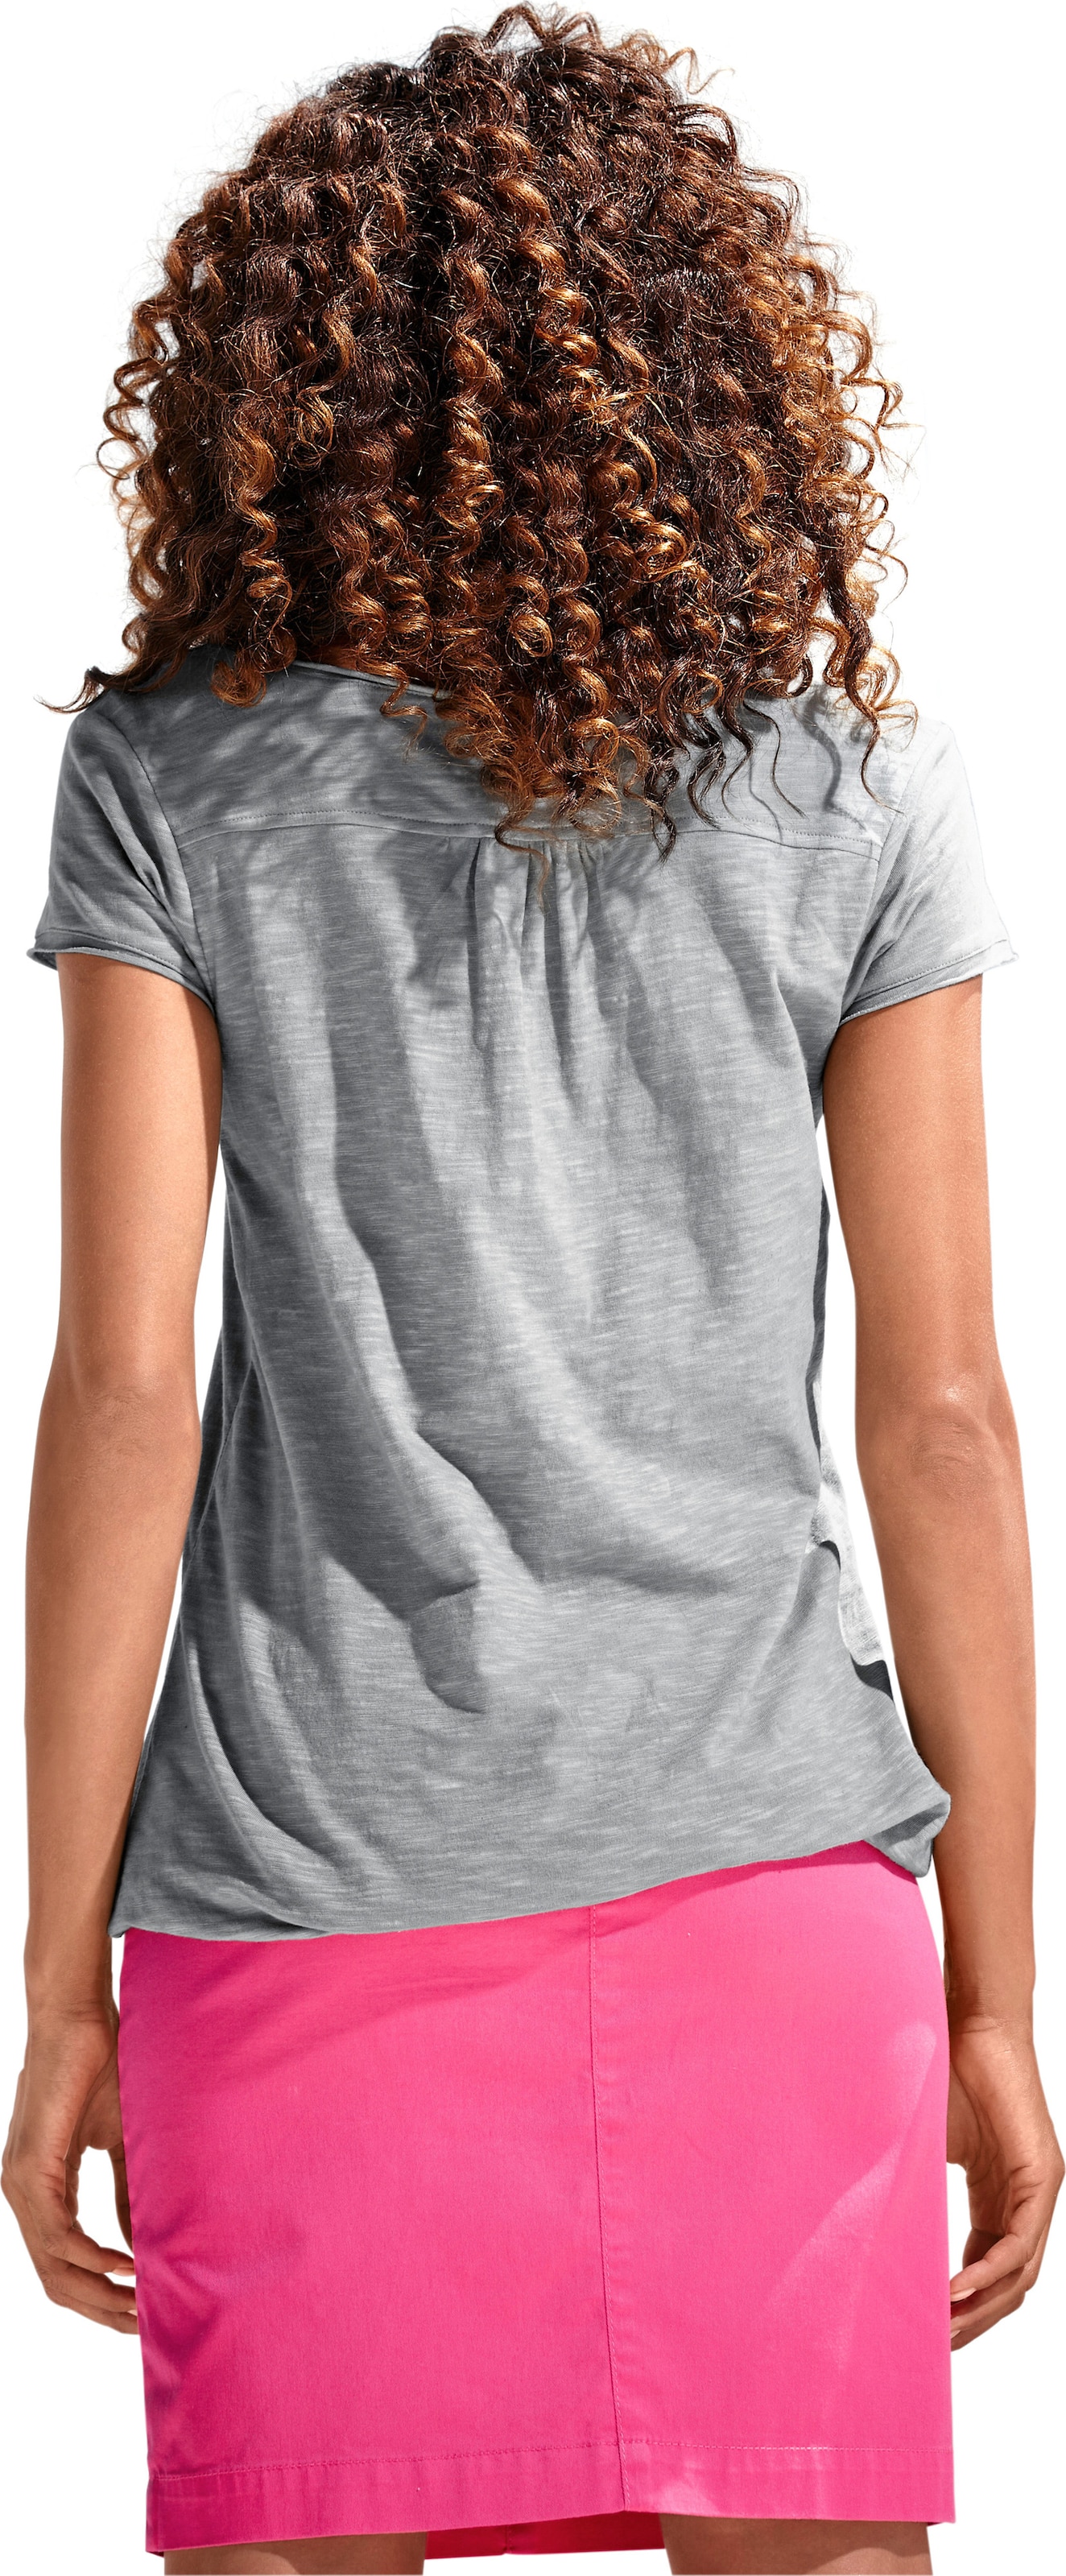 Leichte günstig Kaufen-Rundhals-Shirt in grau von heine. Rundhals-Shirt in grau von heine <![CDATA[Rundhals-Shirt Moderne Form mit Gummizugbund. Mit Spitzen-Details und schimmernden Knöpfen. Leichte Shirtware mit Flammé-Effekt.]]>. 